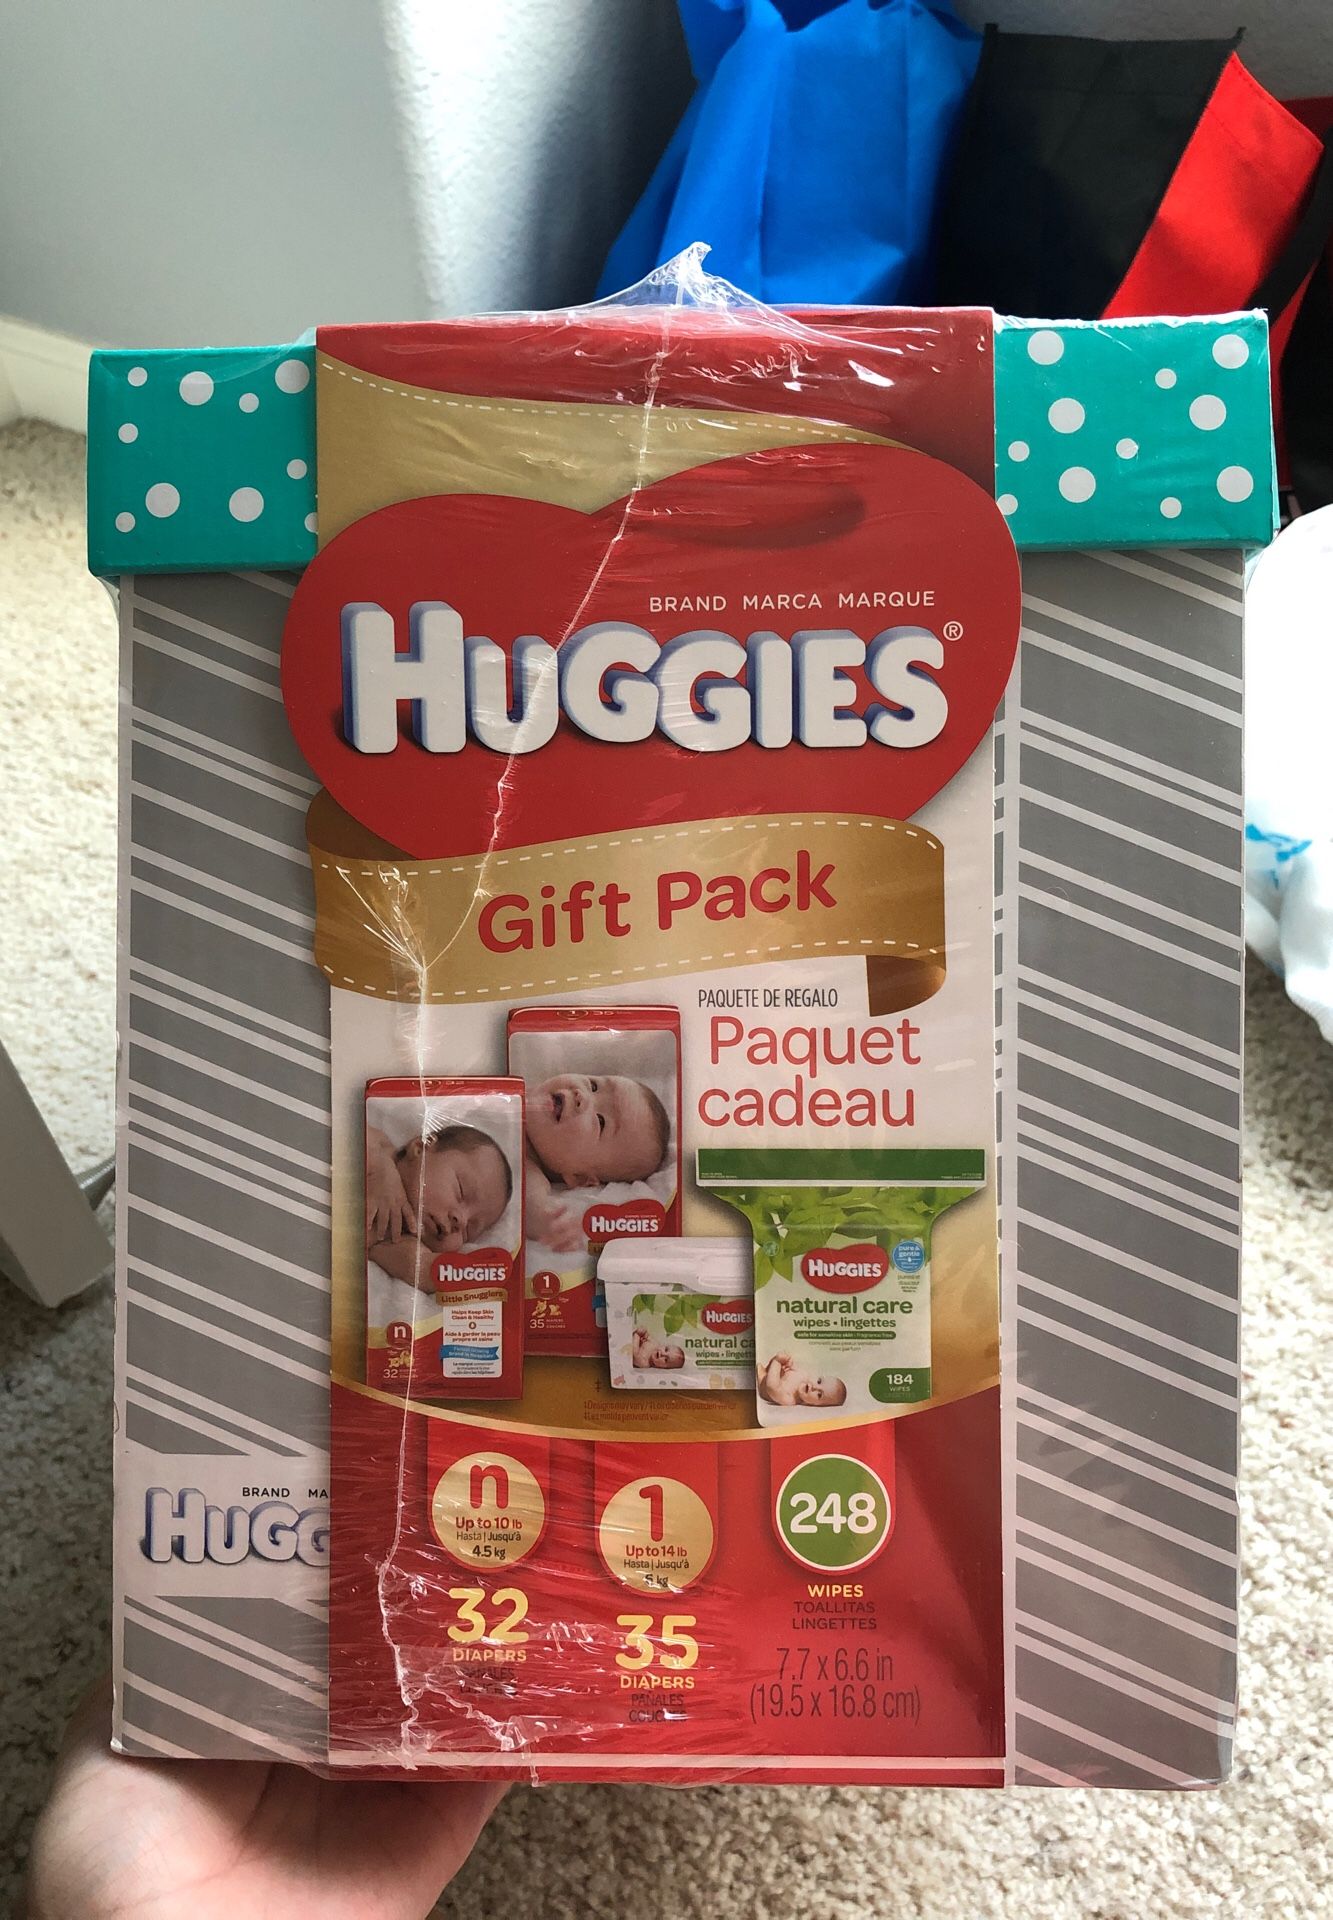 Huggies gift pack